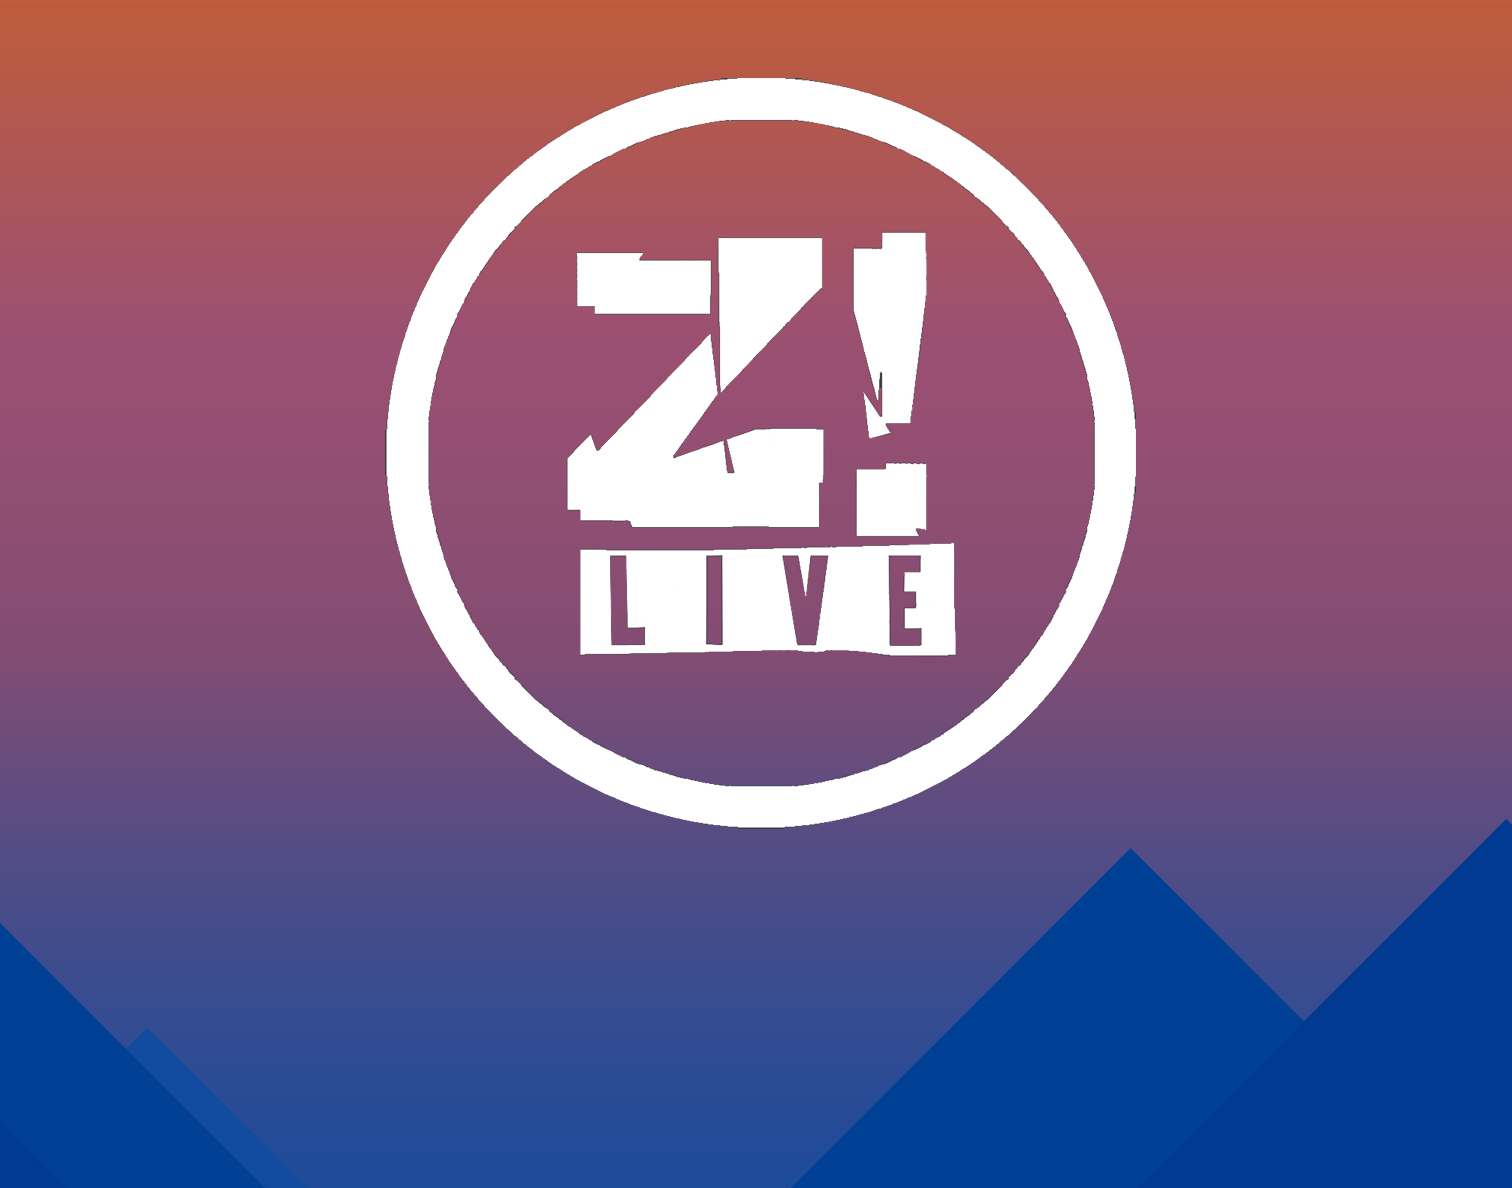 Z! Live